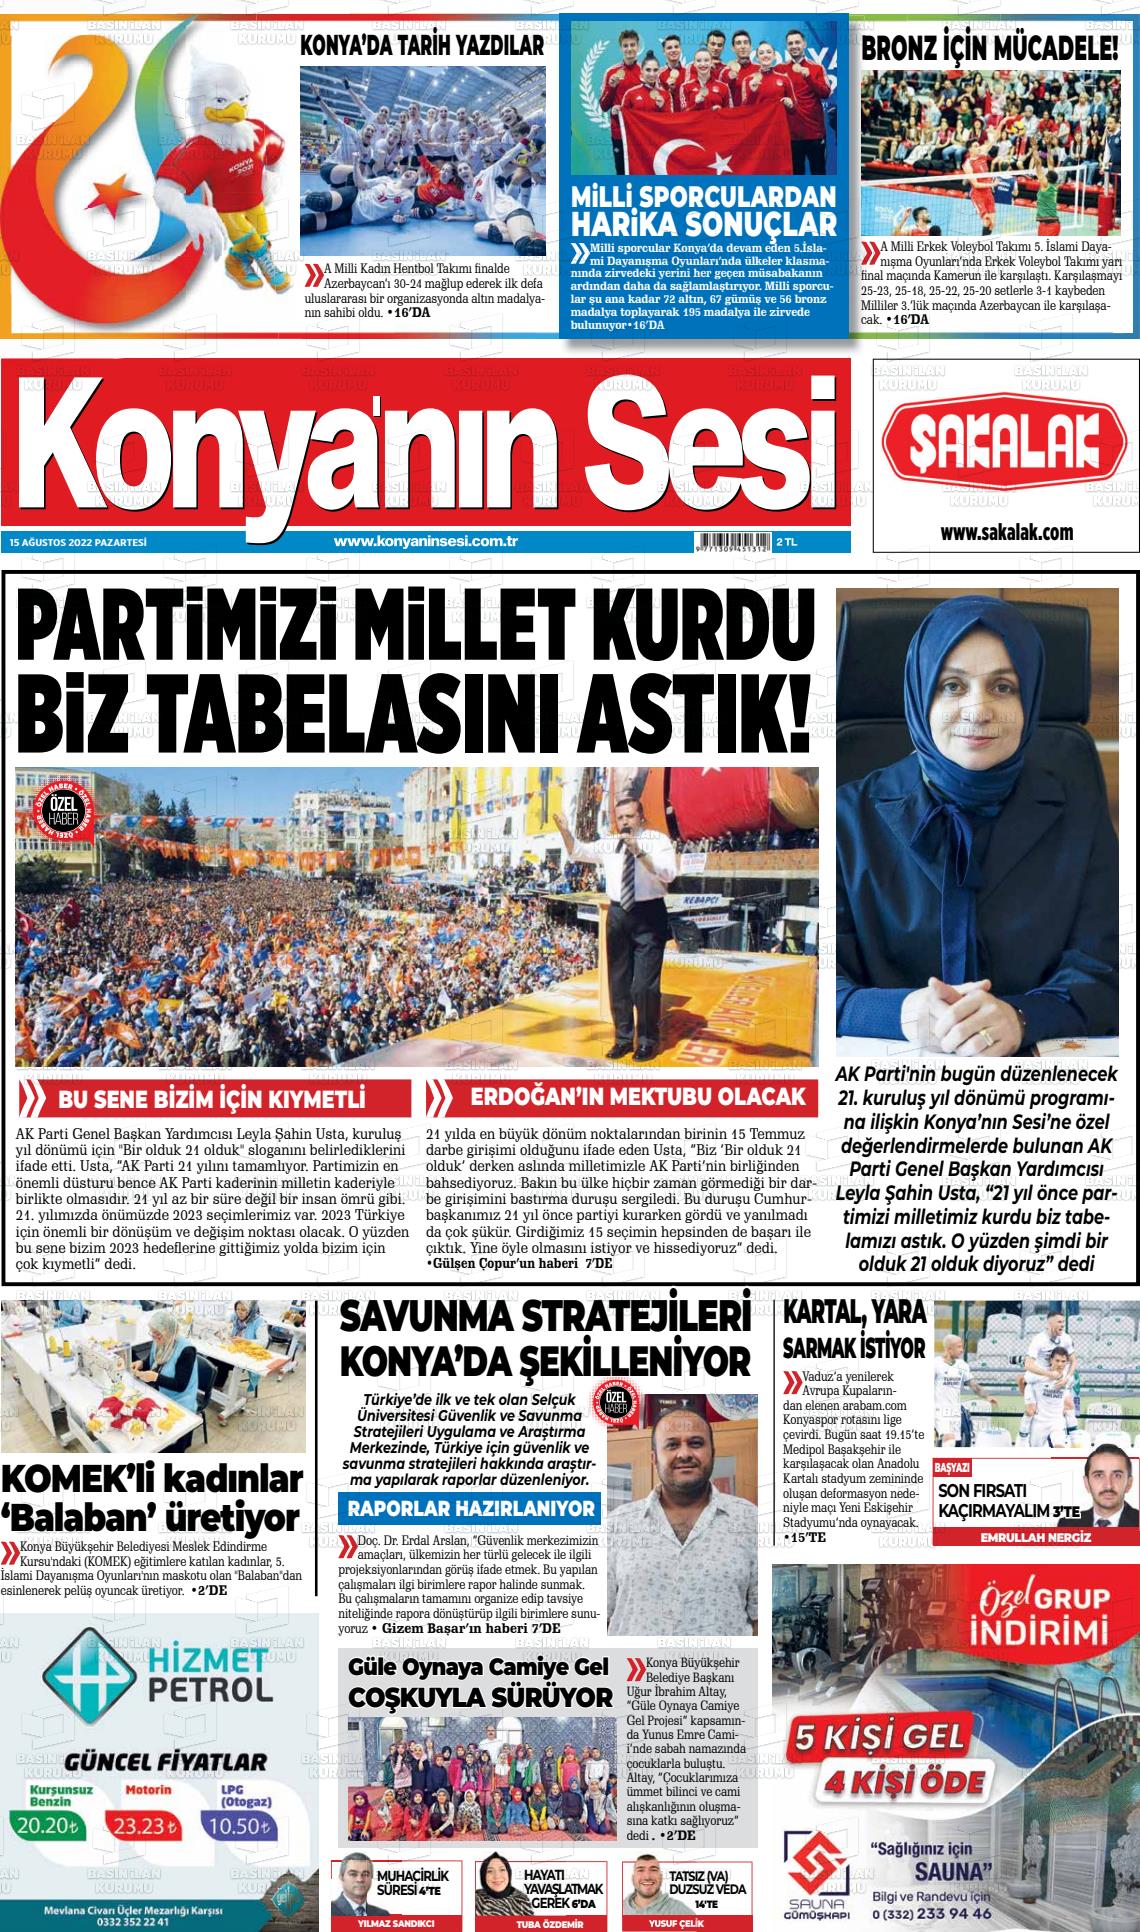 15 Ağustos 2022 Konyanin Sesi Gazete Manşeti